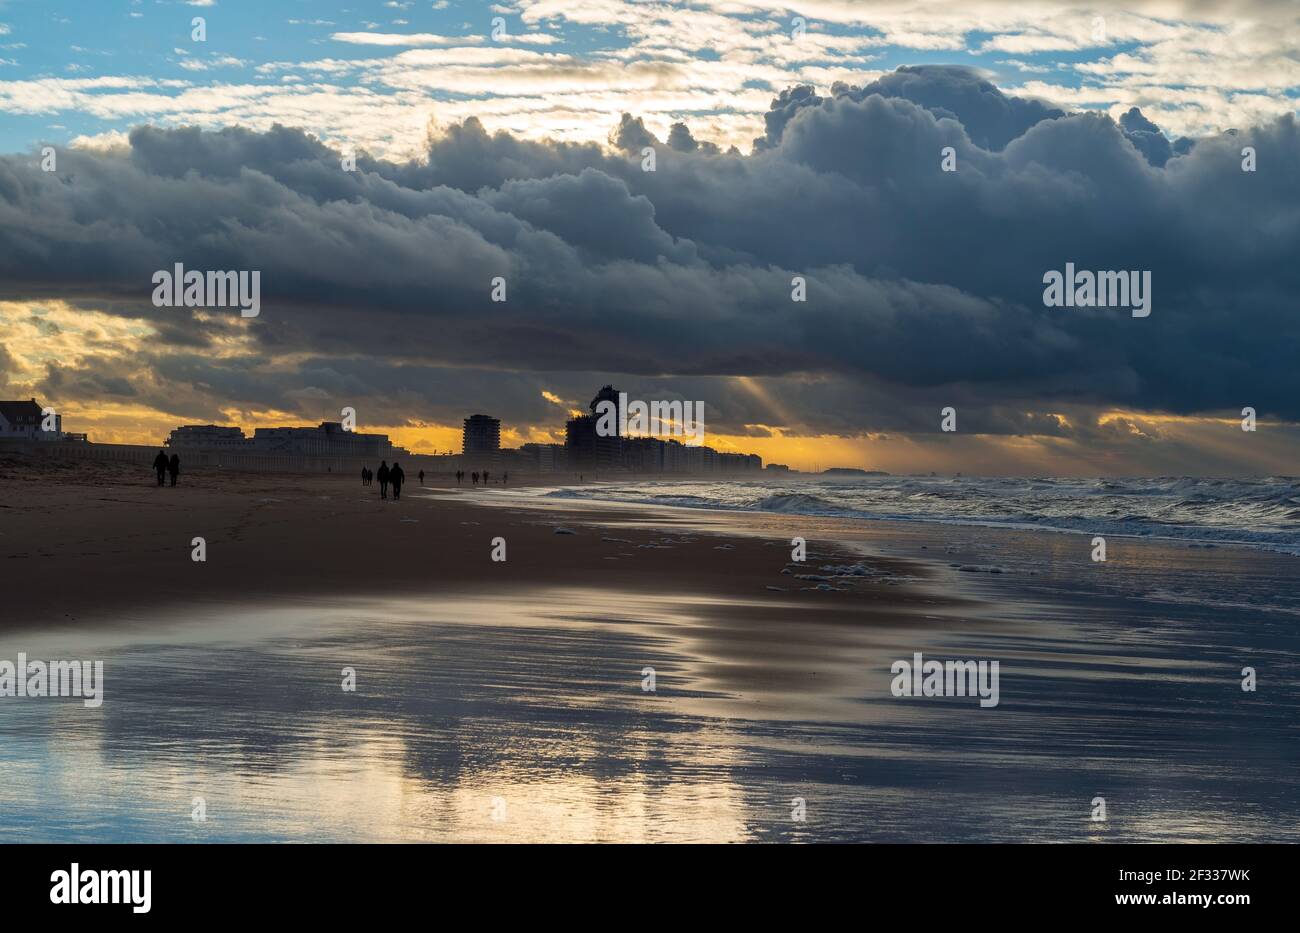 Oostende (Ostende) plage avec temps de tempête et silhouette de gens marchant au bord de la mer du Nord, Belgique. Banque D'Images